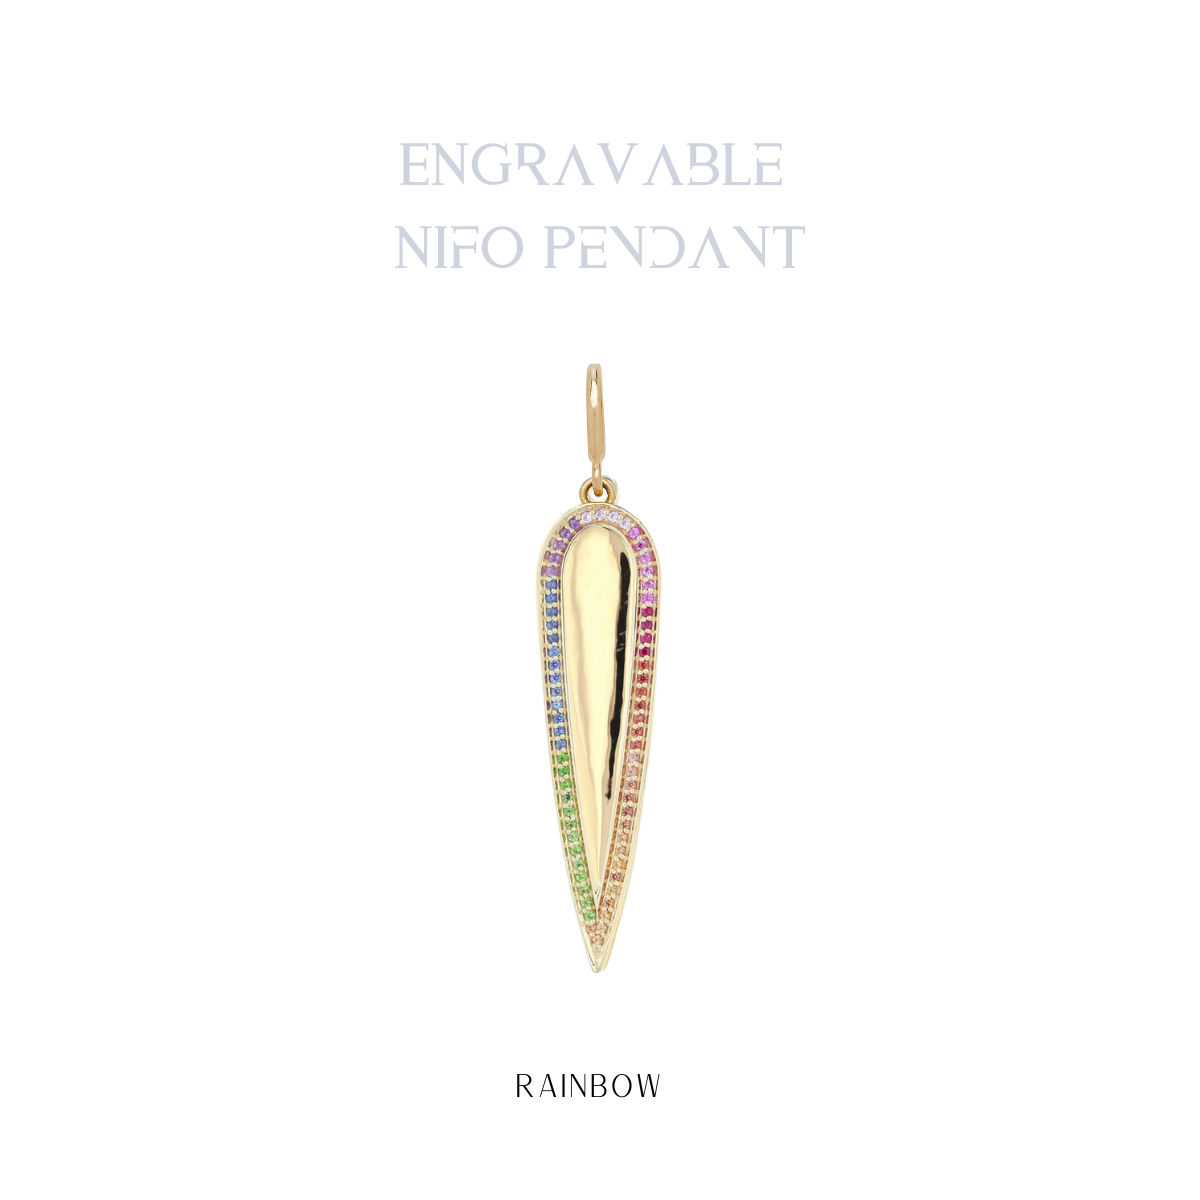 Engraveable Nifo Pendant